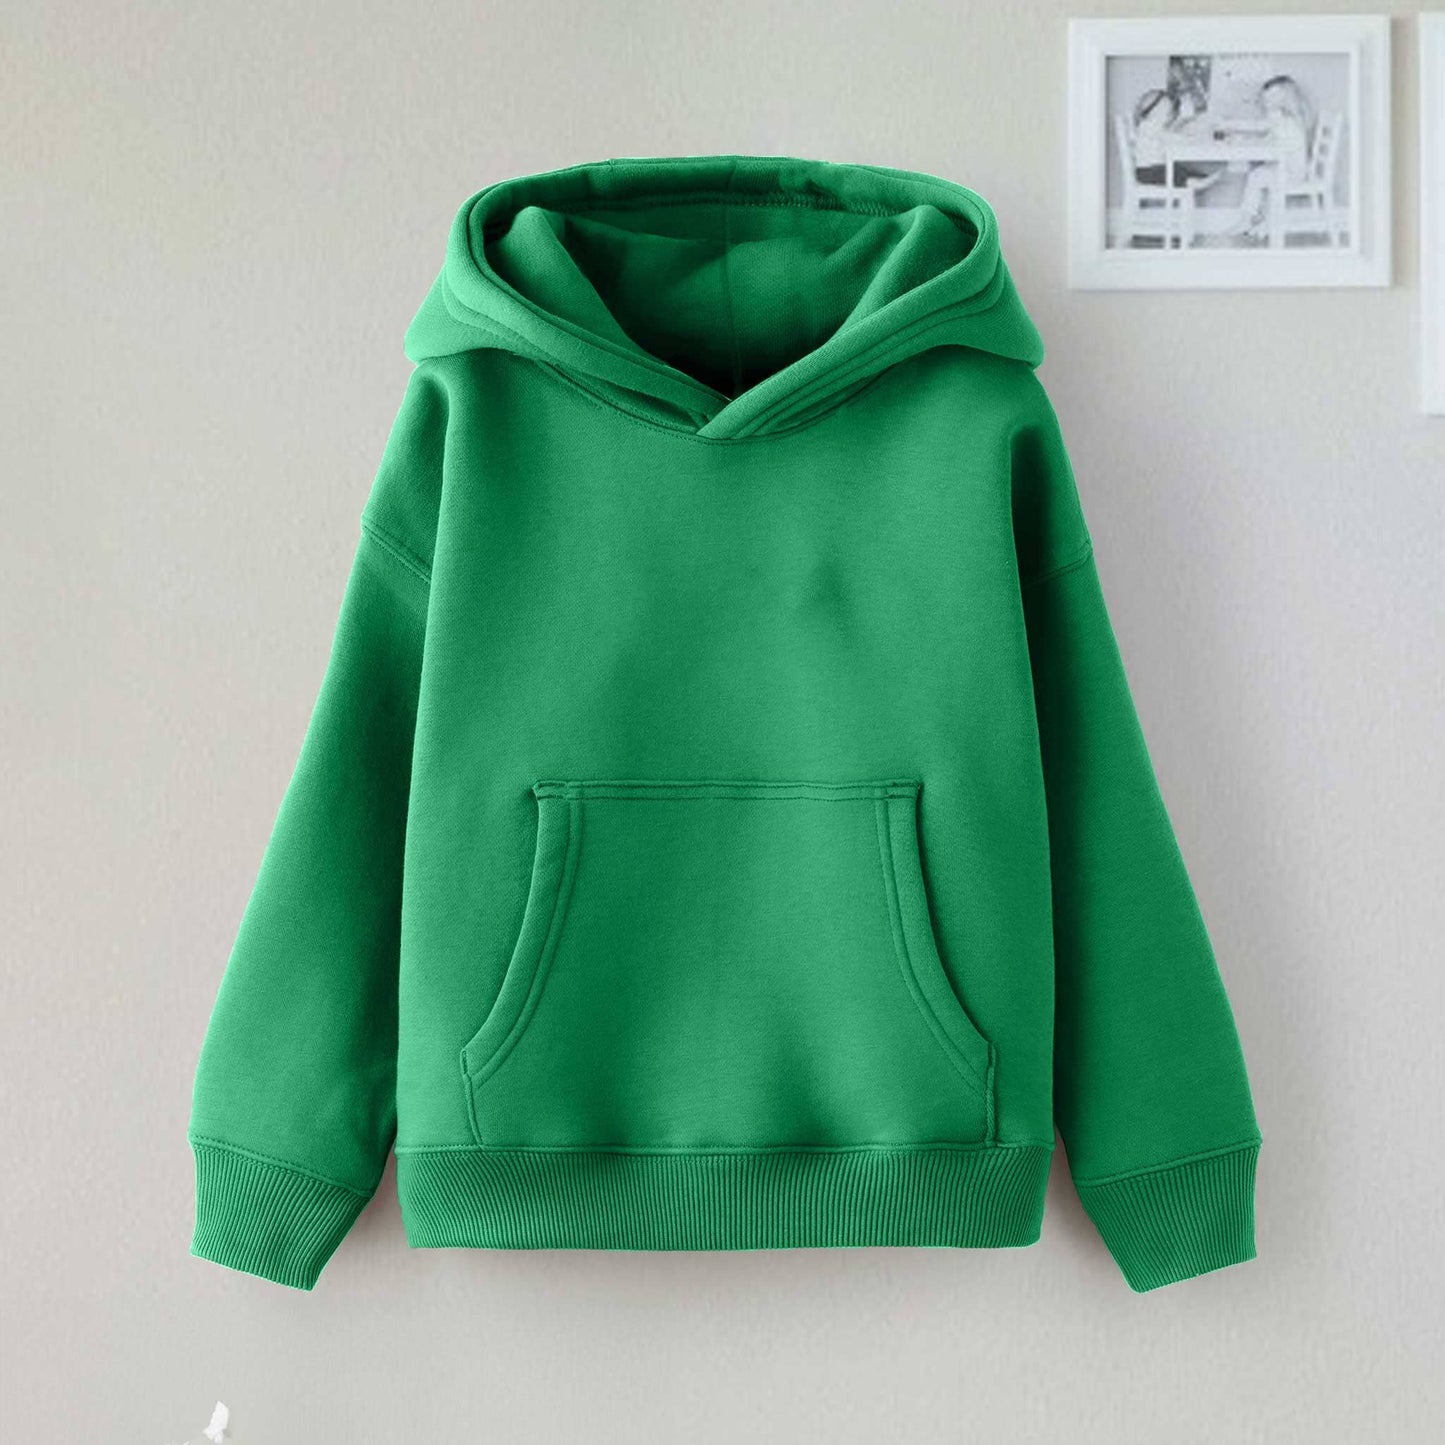 Dream Kid's Solid Design Long Sleeve Pullover Fleece Hoodie Boy's Pullover Hoodie Minhas Garments Green 2-3 Years 